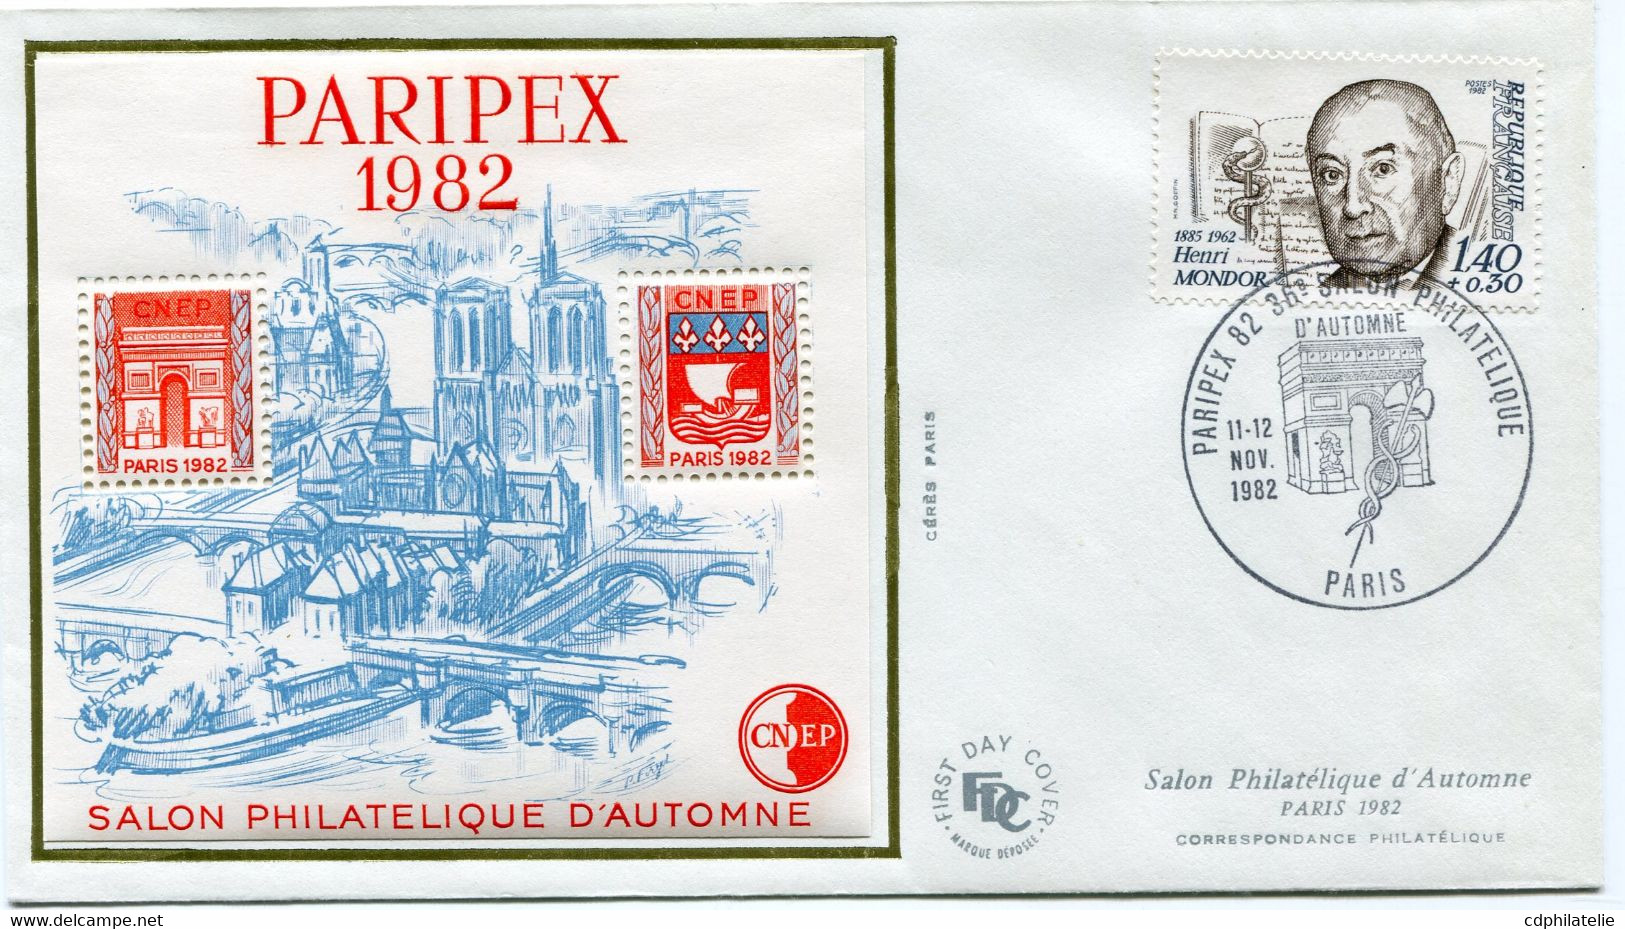 FRANCE ENVELOPPE 1er JOUR DU SALON D'AUTOMNE PARIS 1982 AVEC LE FEUILLET-SOUVENIR 3A PARIPEX 1982 + OBL. ILLUSTREE DU.. - CNEP